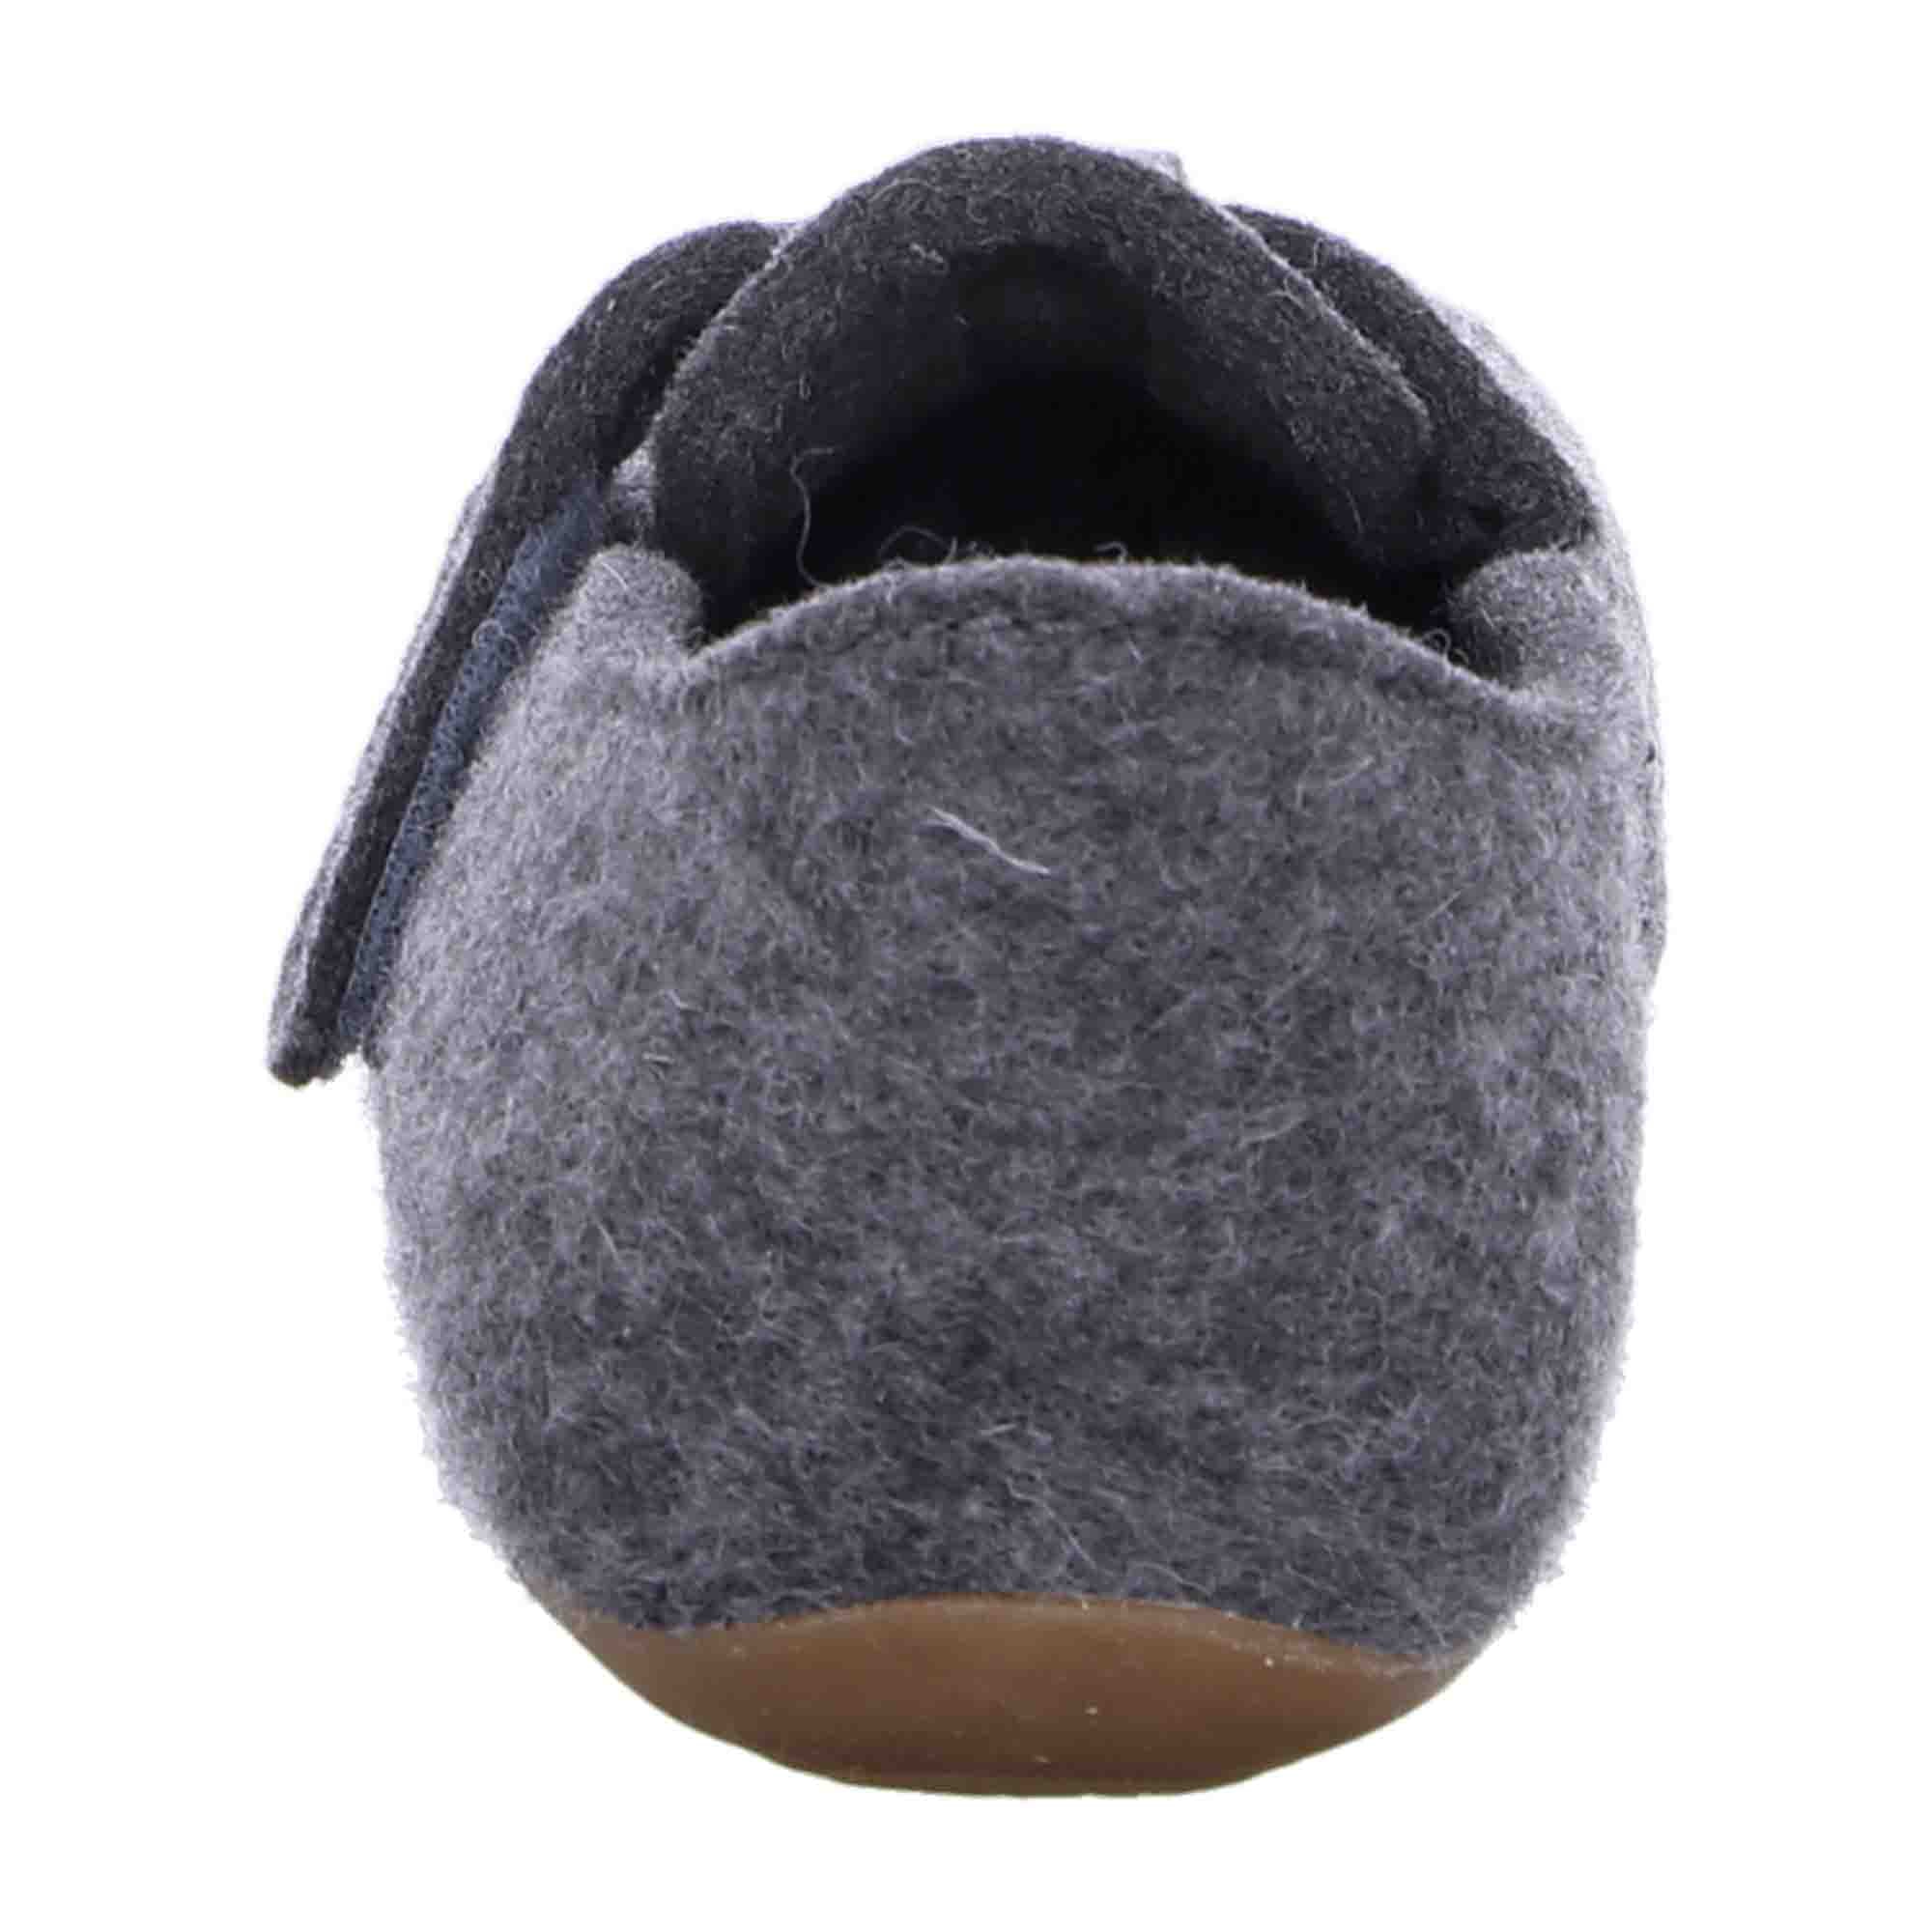 Haflinger Everest Focus Men's Wool Felt Slippers, Anthracite Grey, Removable Footbed - 481056-4